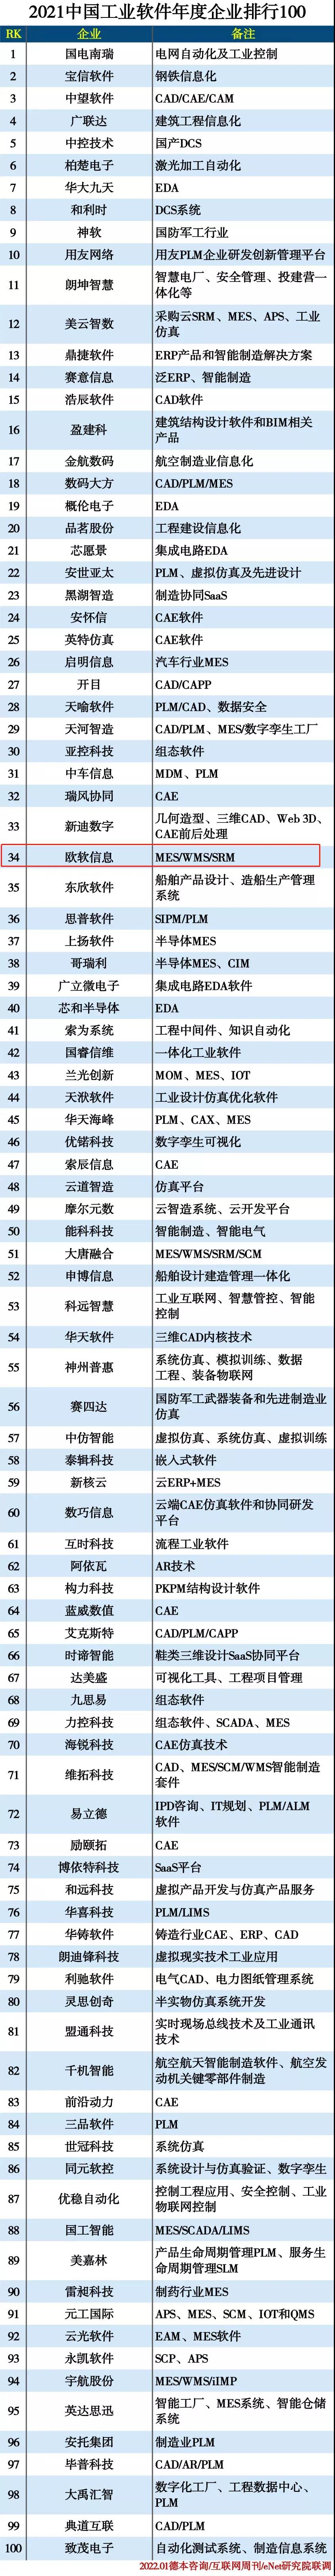 欧软上榜2021中国工业软件年度企业排行100名单(图1)